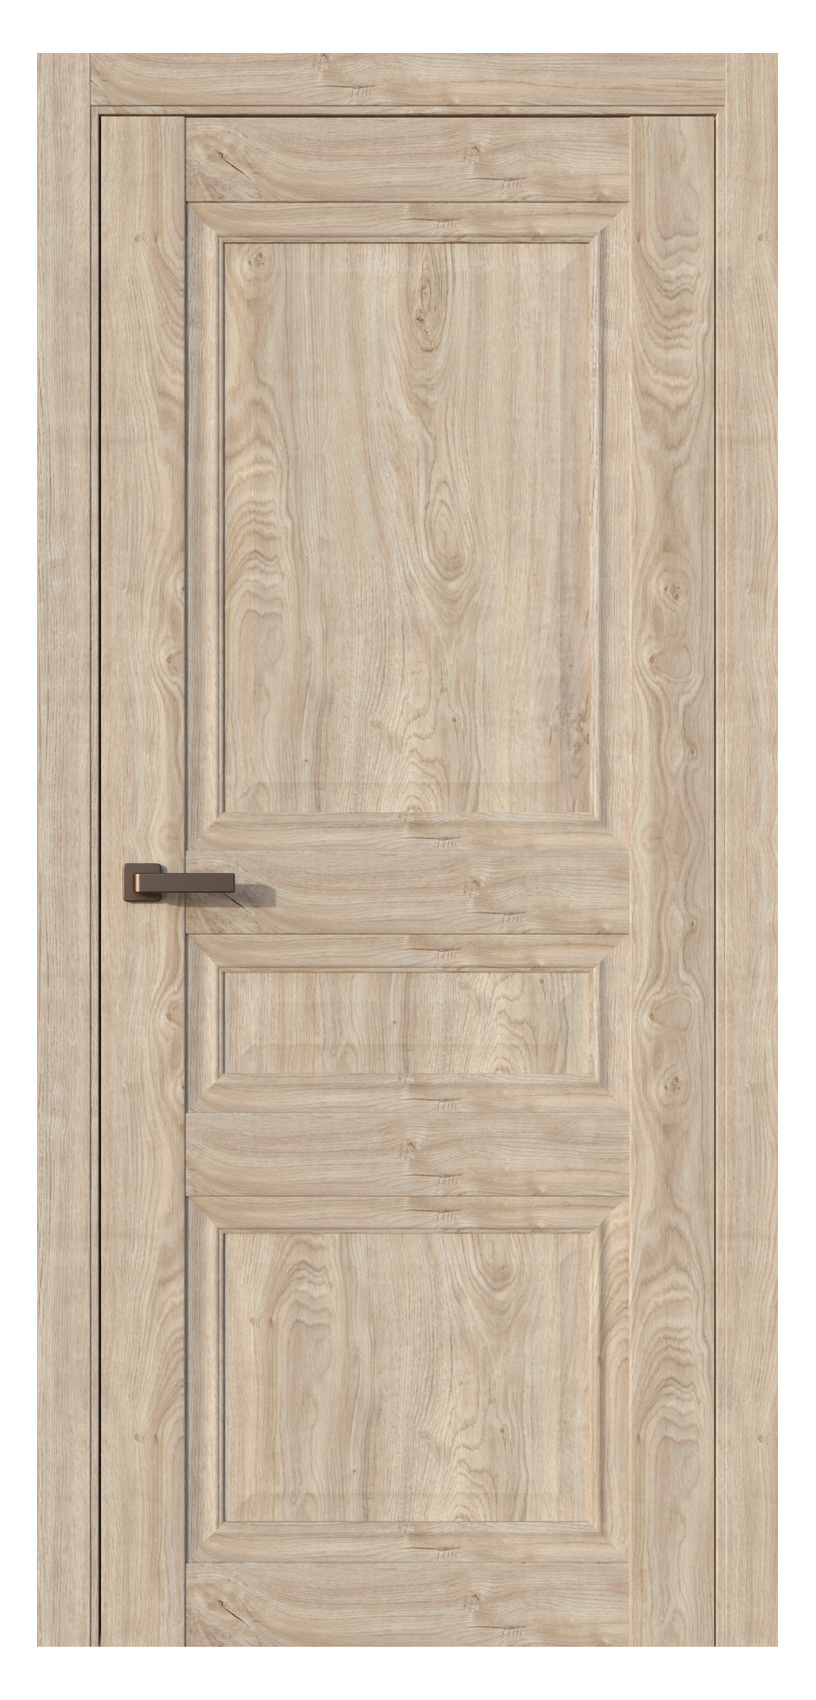 Questdoors Межкомнатная дверь QH3, арт. 17531 - фото №1